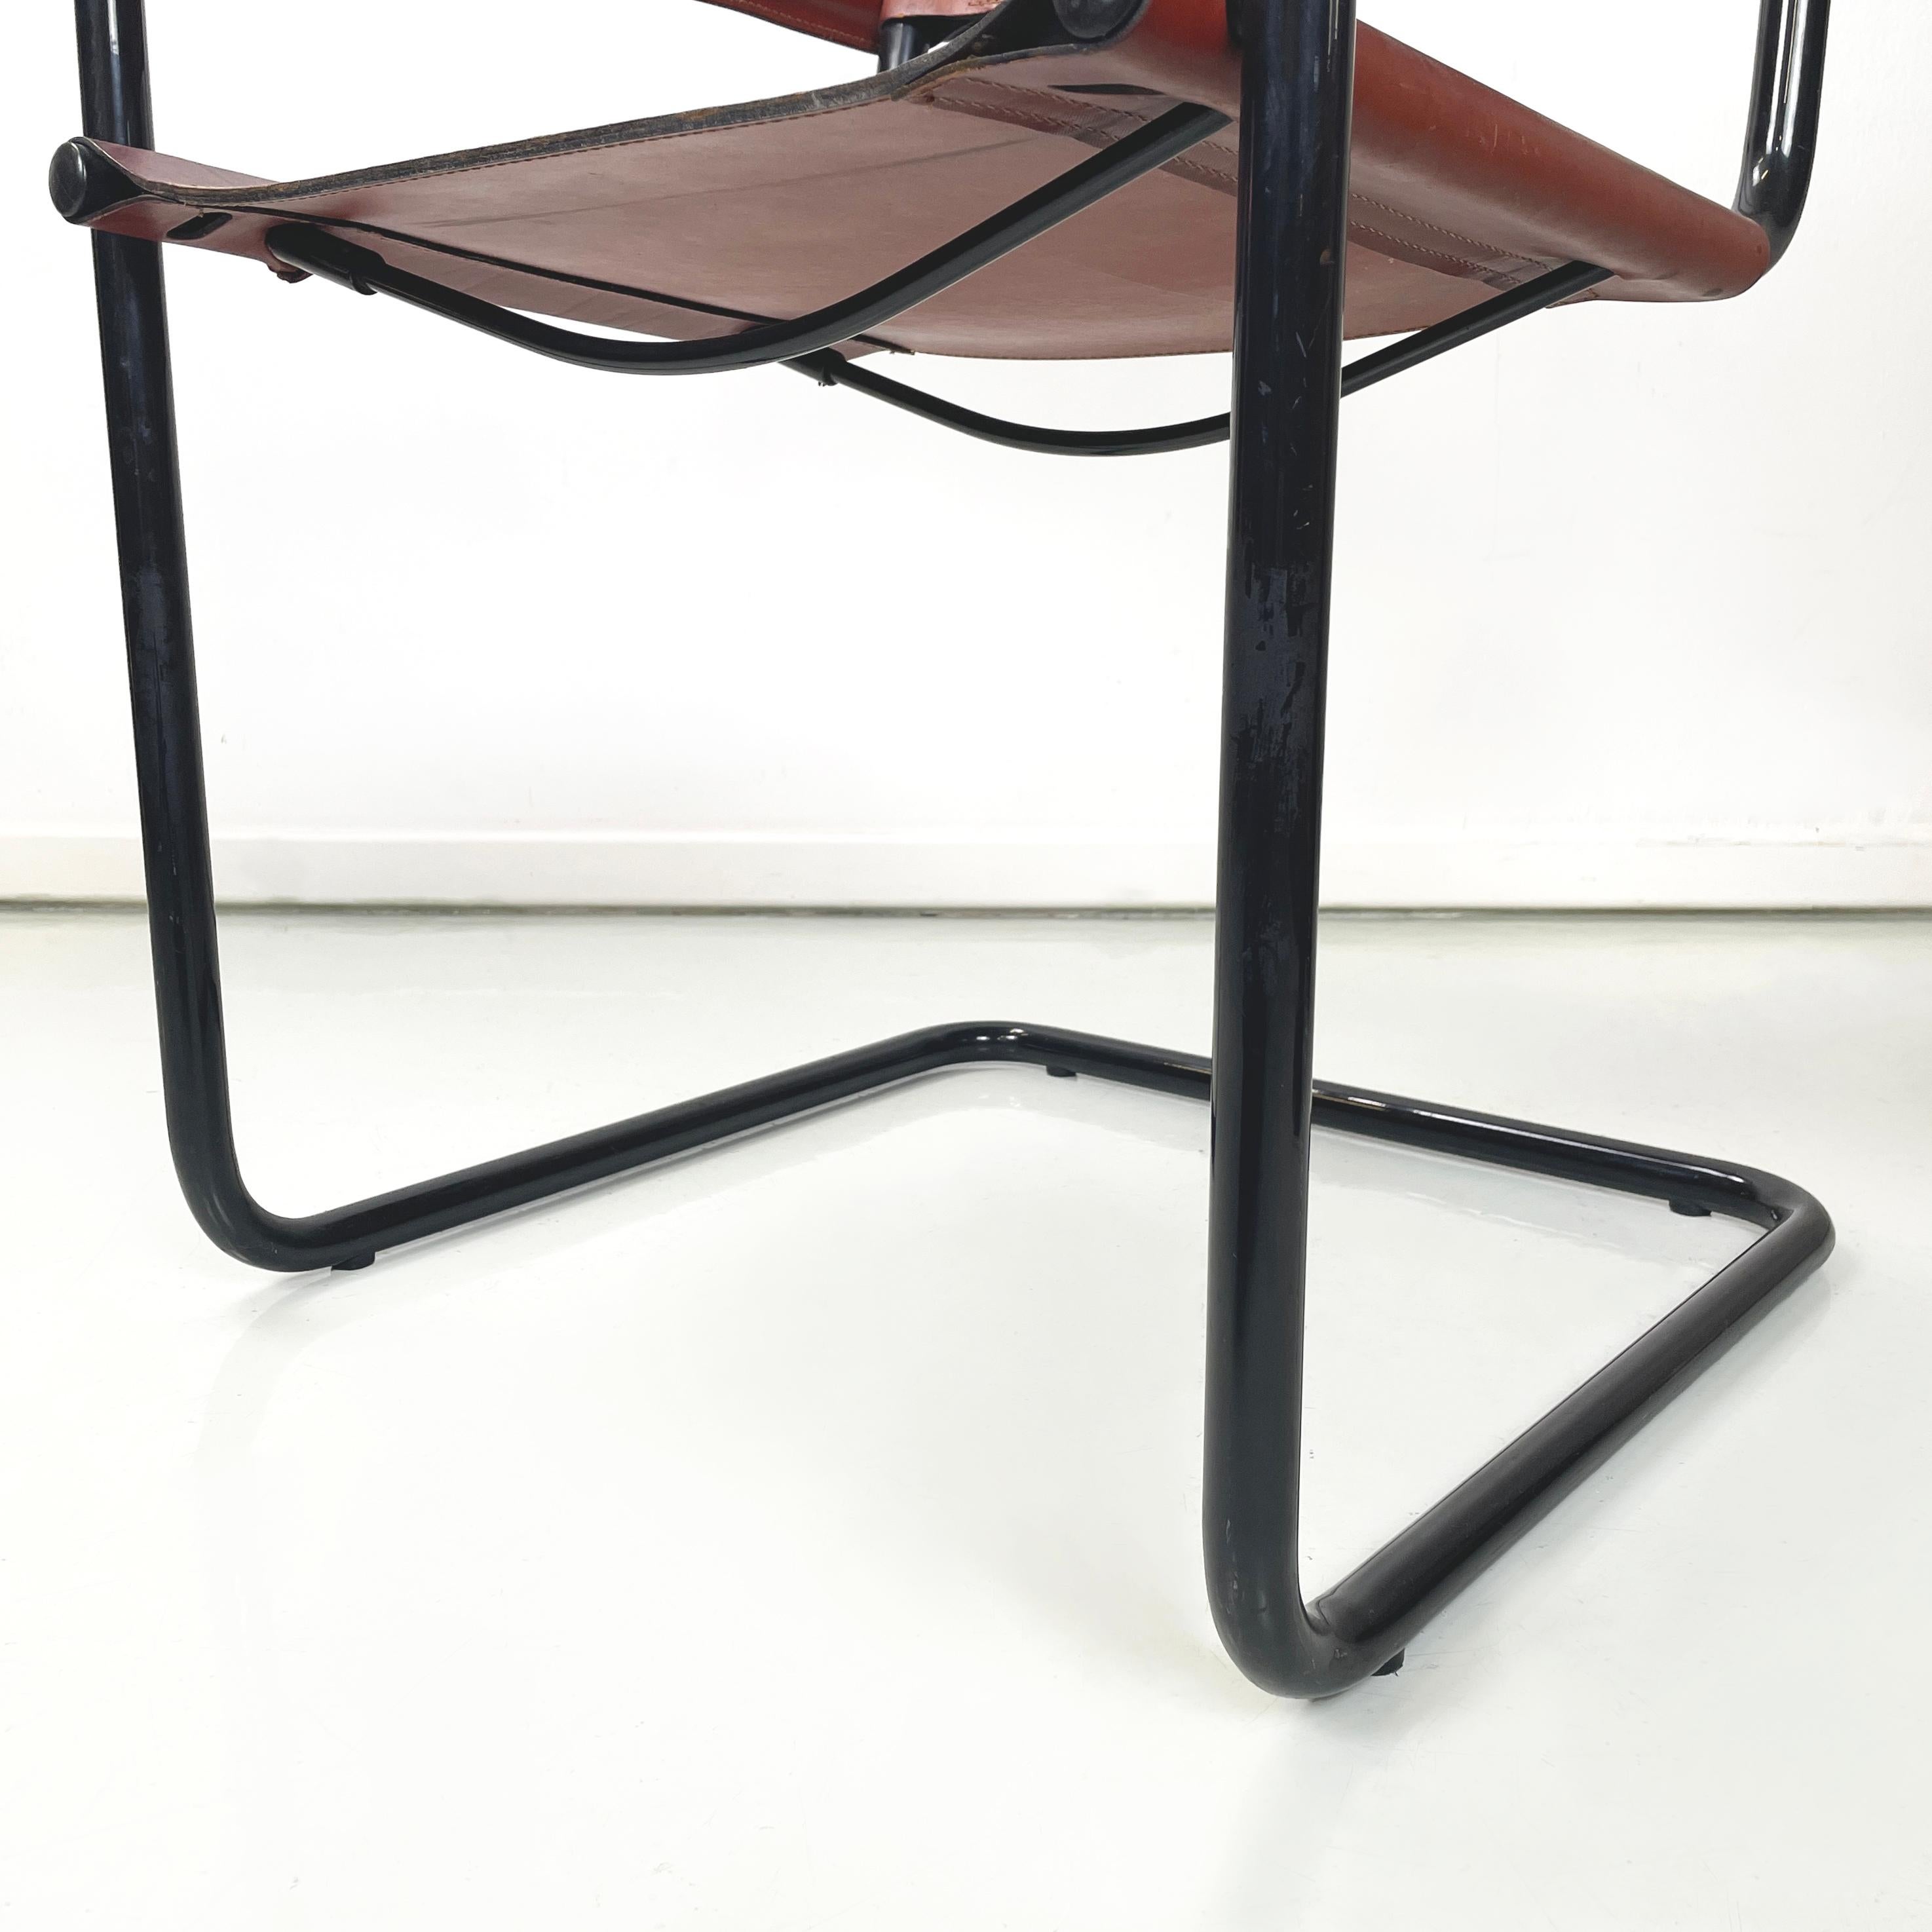 Italienische Moderne Brauner Esszimmerstuhl MG5 von Marcel Breuer und Mart Stam für Matteo Grassi, 1970er Jahre
Stuhl Mod. MG5 mit Rückenlehne und Sitz aus braunem Lederband. Die Struktur besteht aus schwarz lackierten Metallrohren. Die Armlehnen